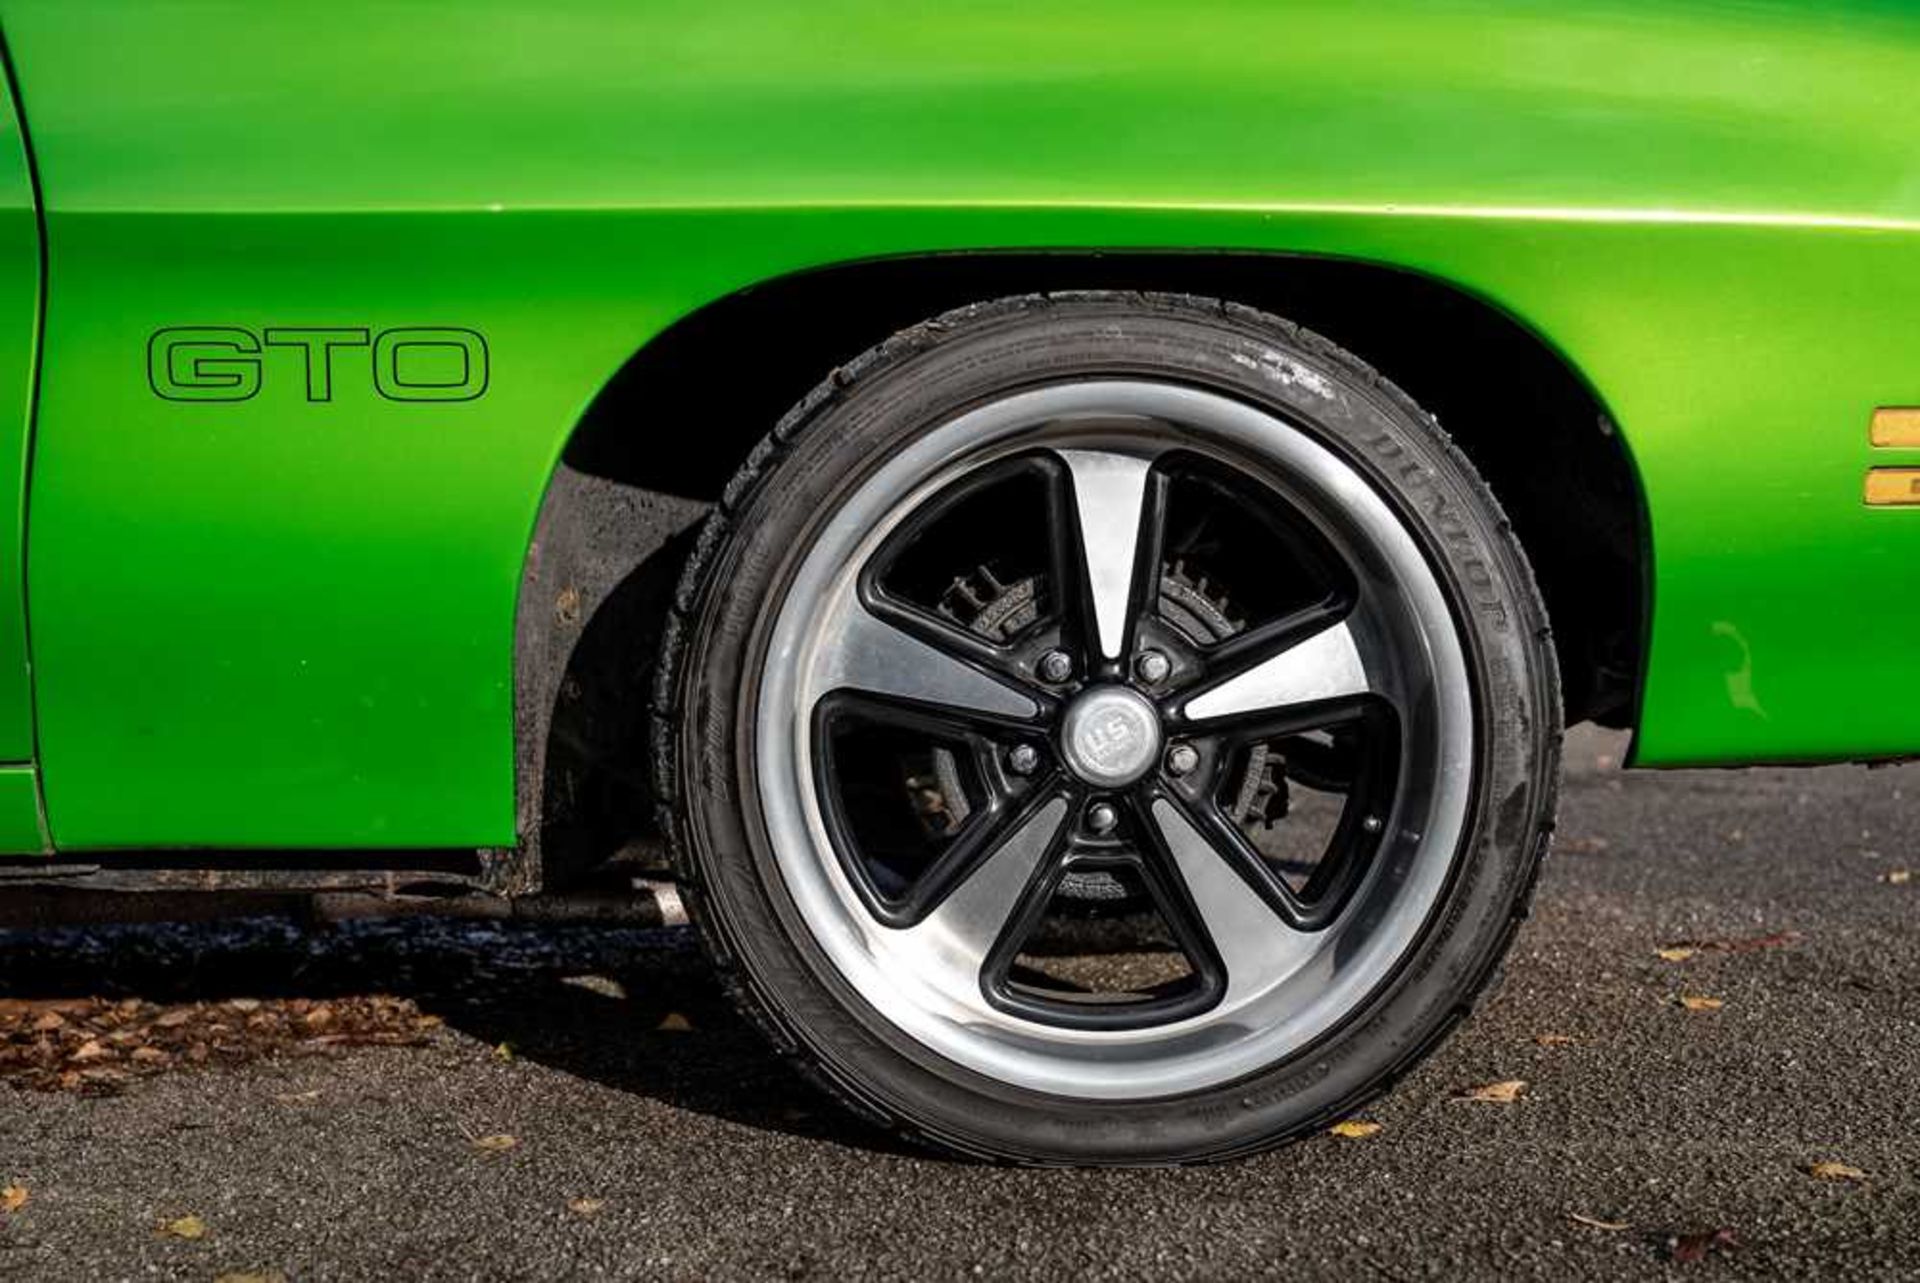 1970 Pontiac GTO - Image 25 of 67